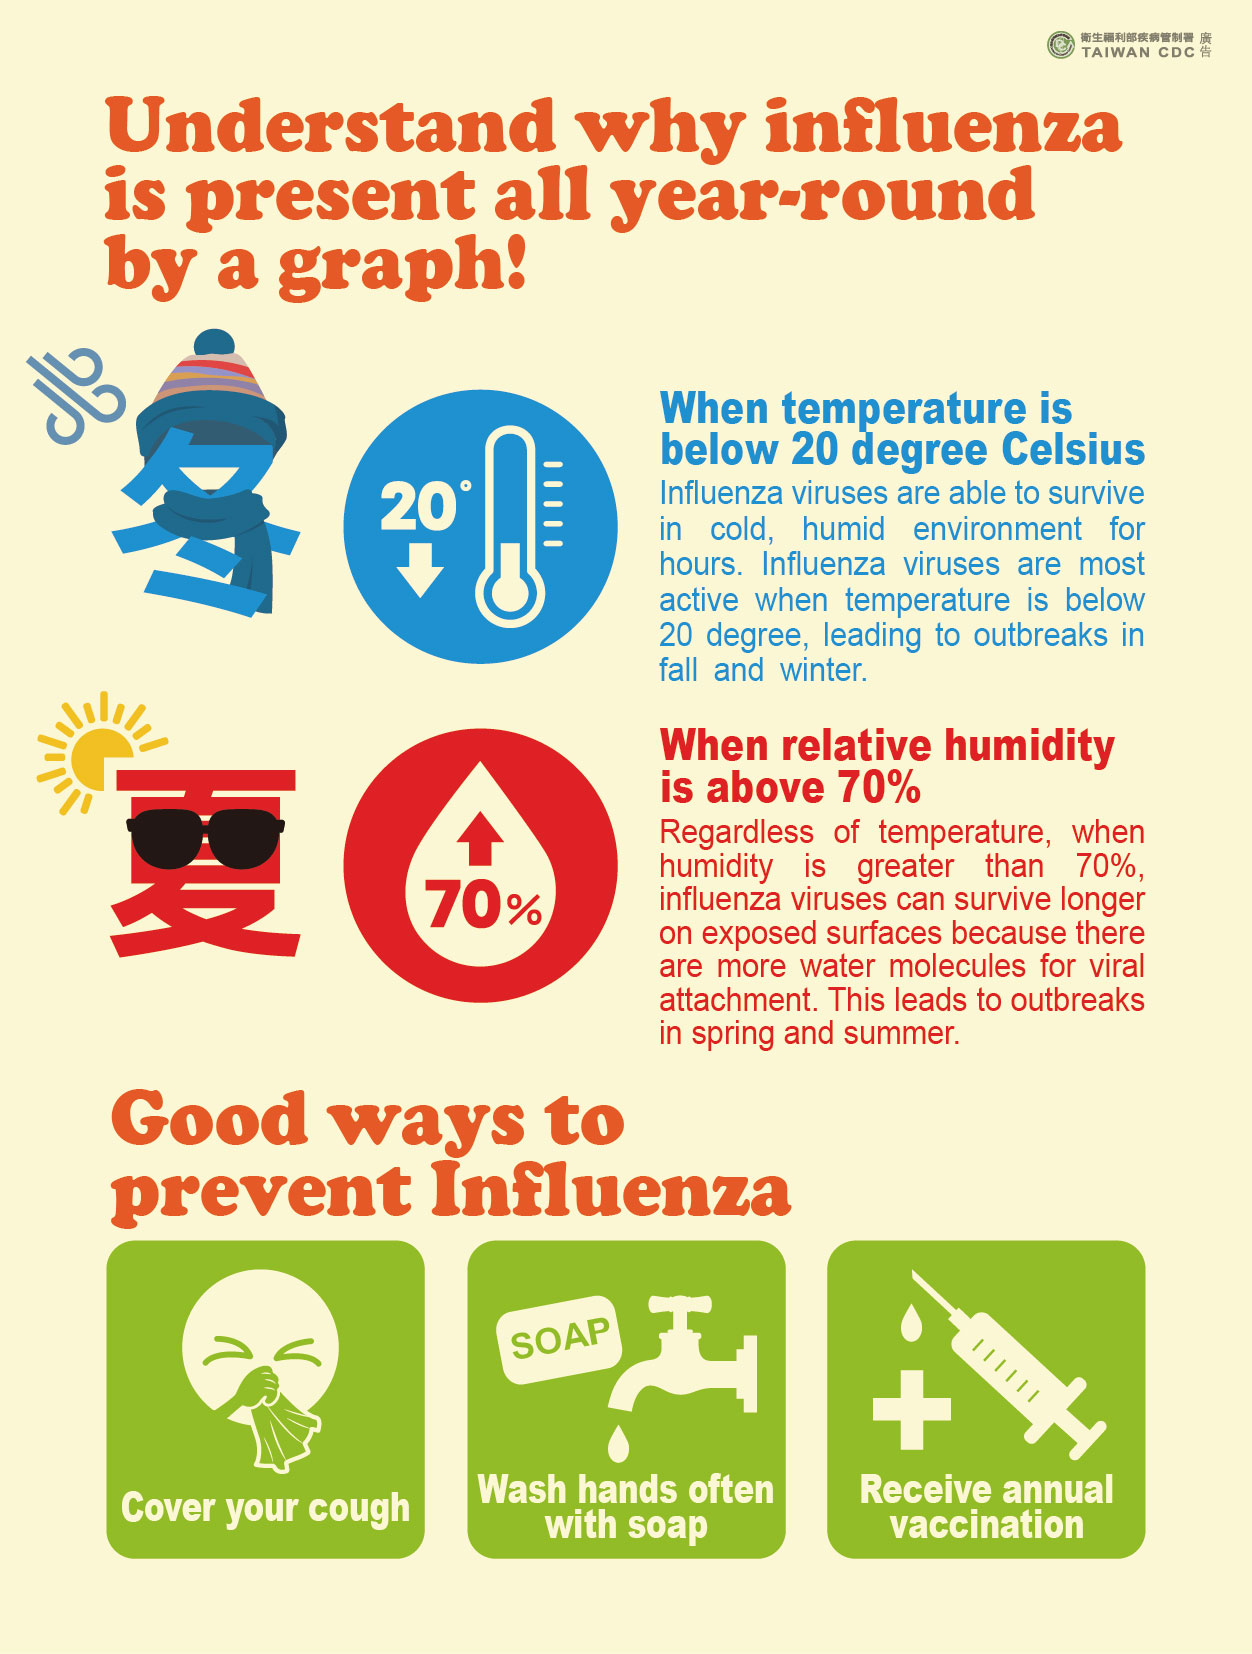 詳如附件【click me】Understand why influenza is present all year-round by a graph!一張圖了解為什麼全年都有流感！（英文）